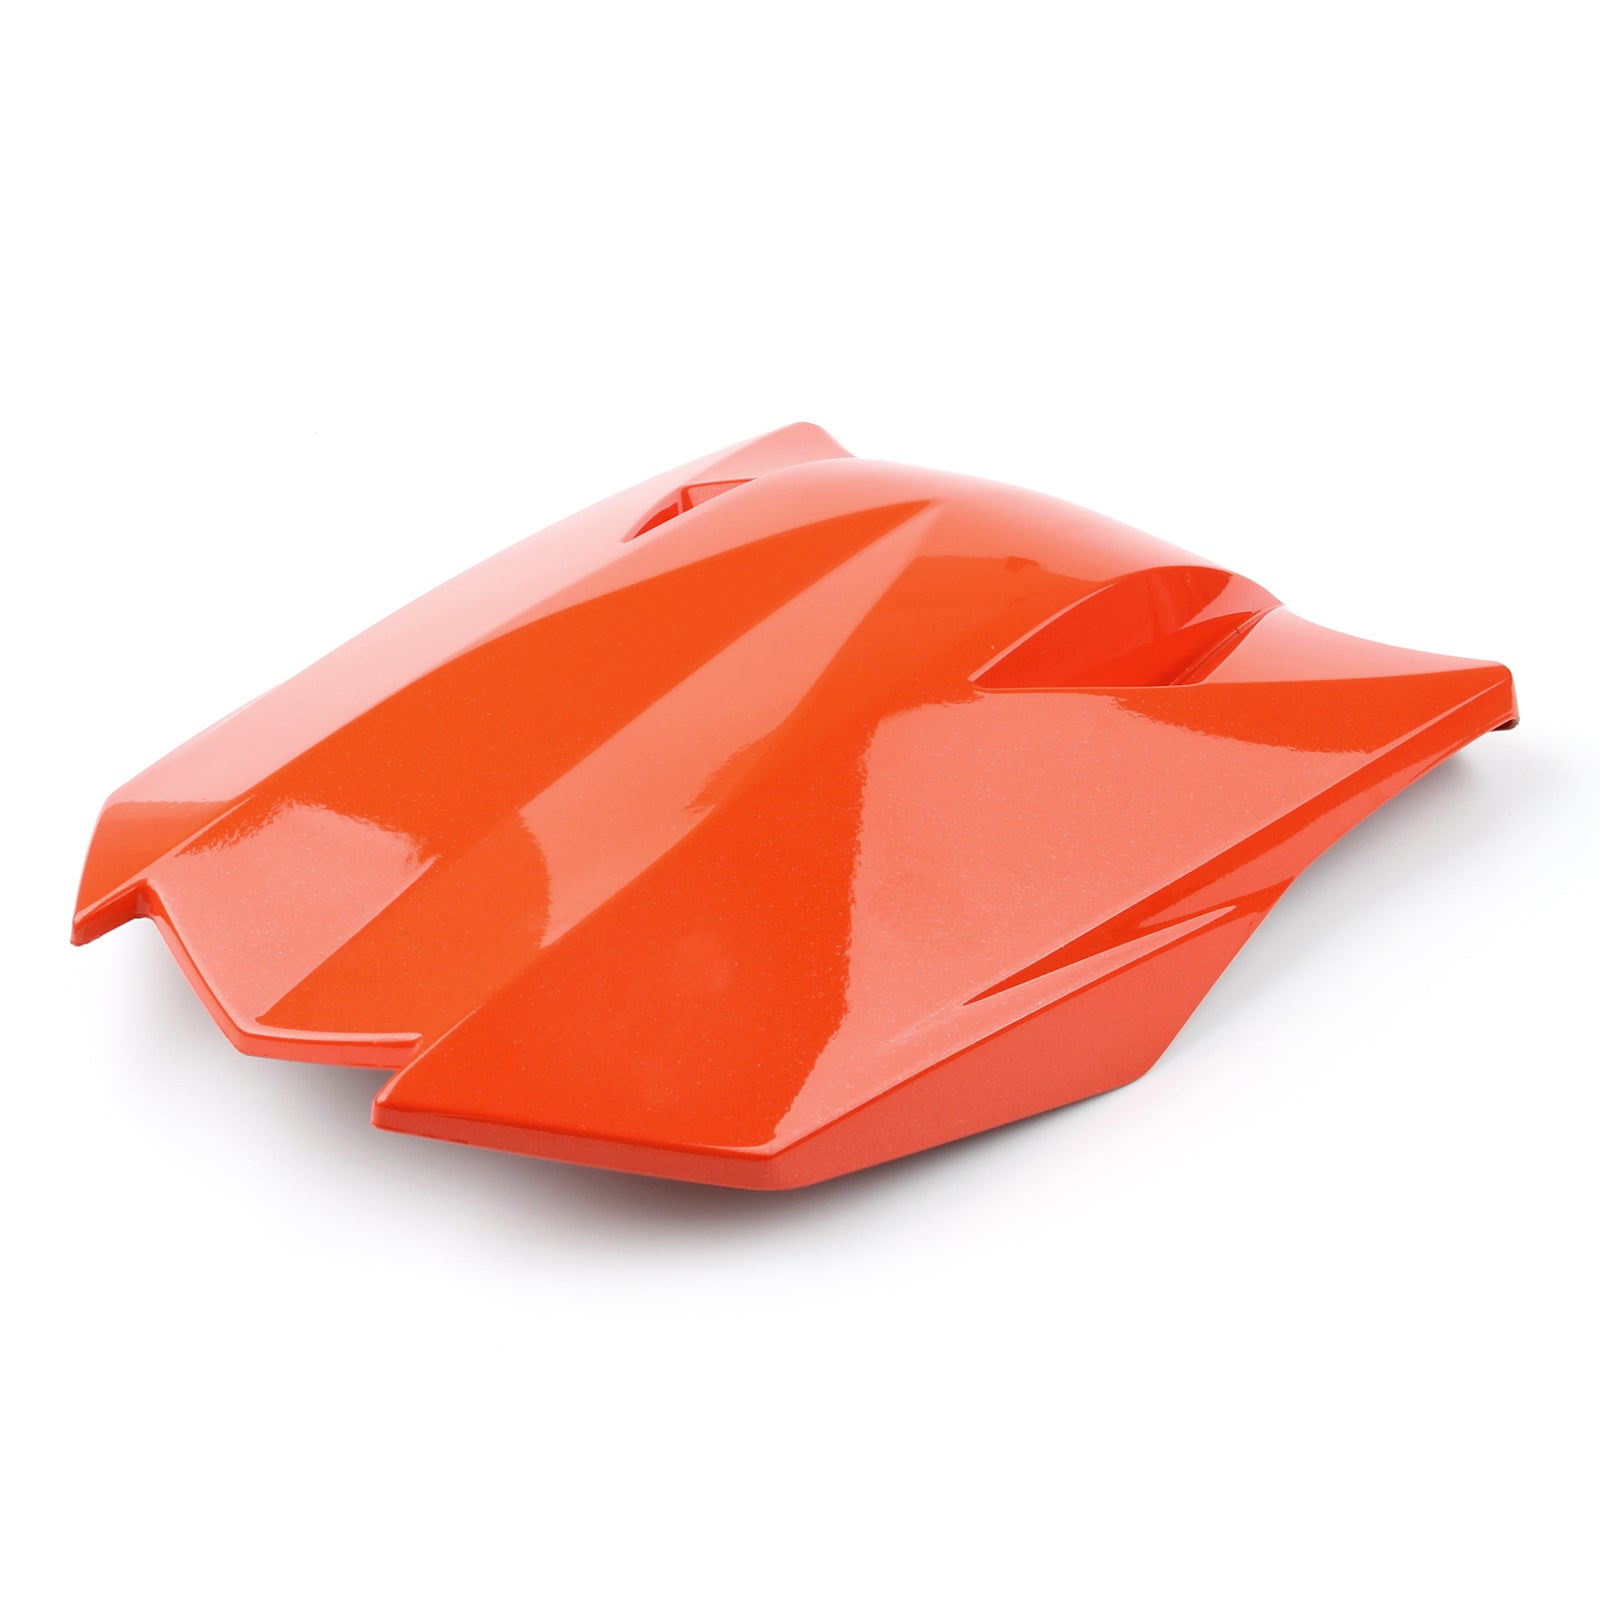 Coprisedile posteriore adatto per Kawasaki Z1000 2011-2013 Arancione generico